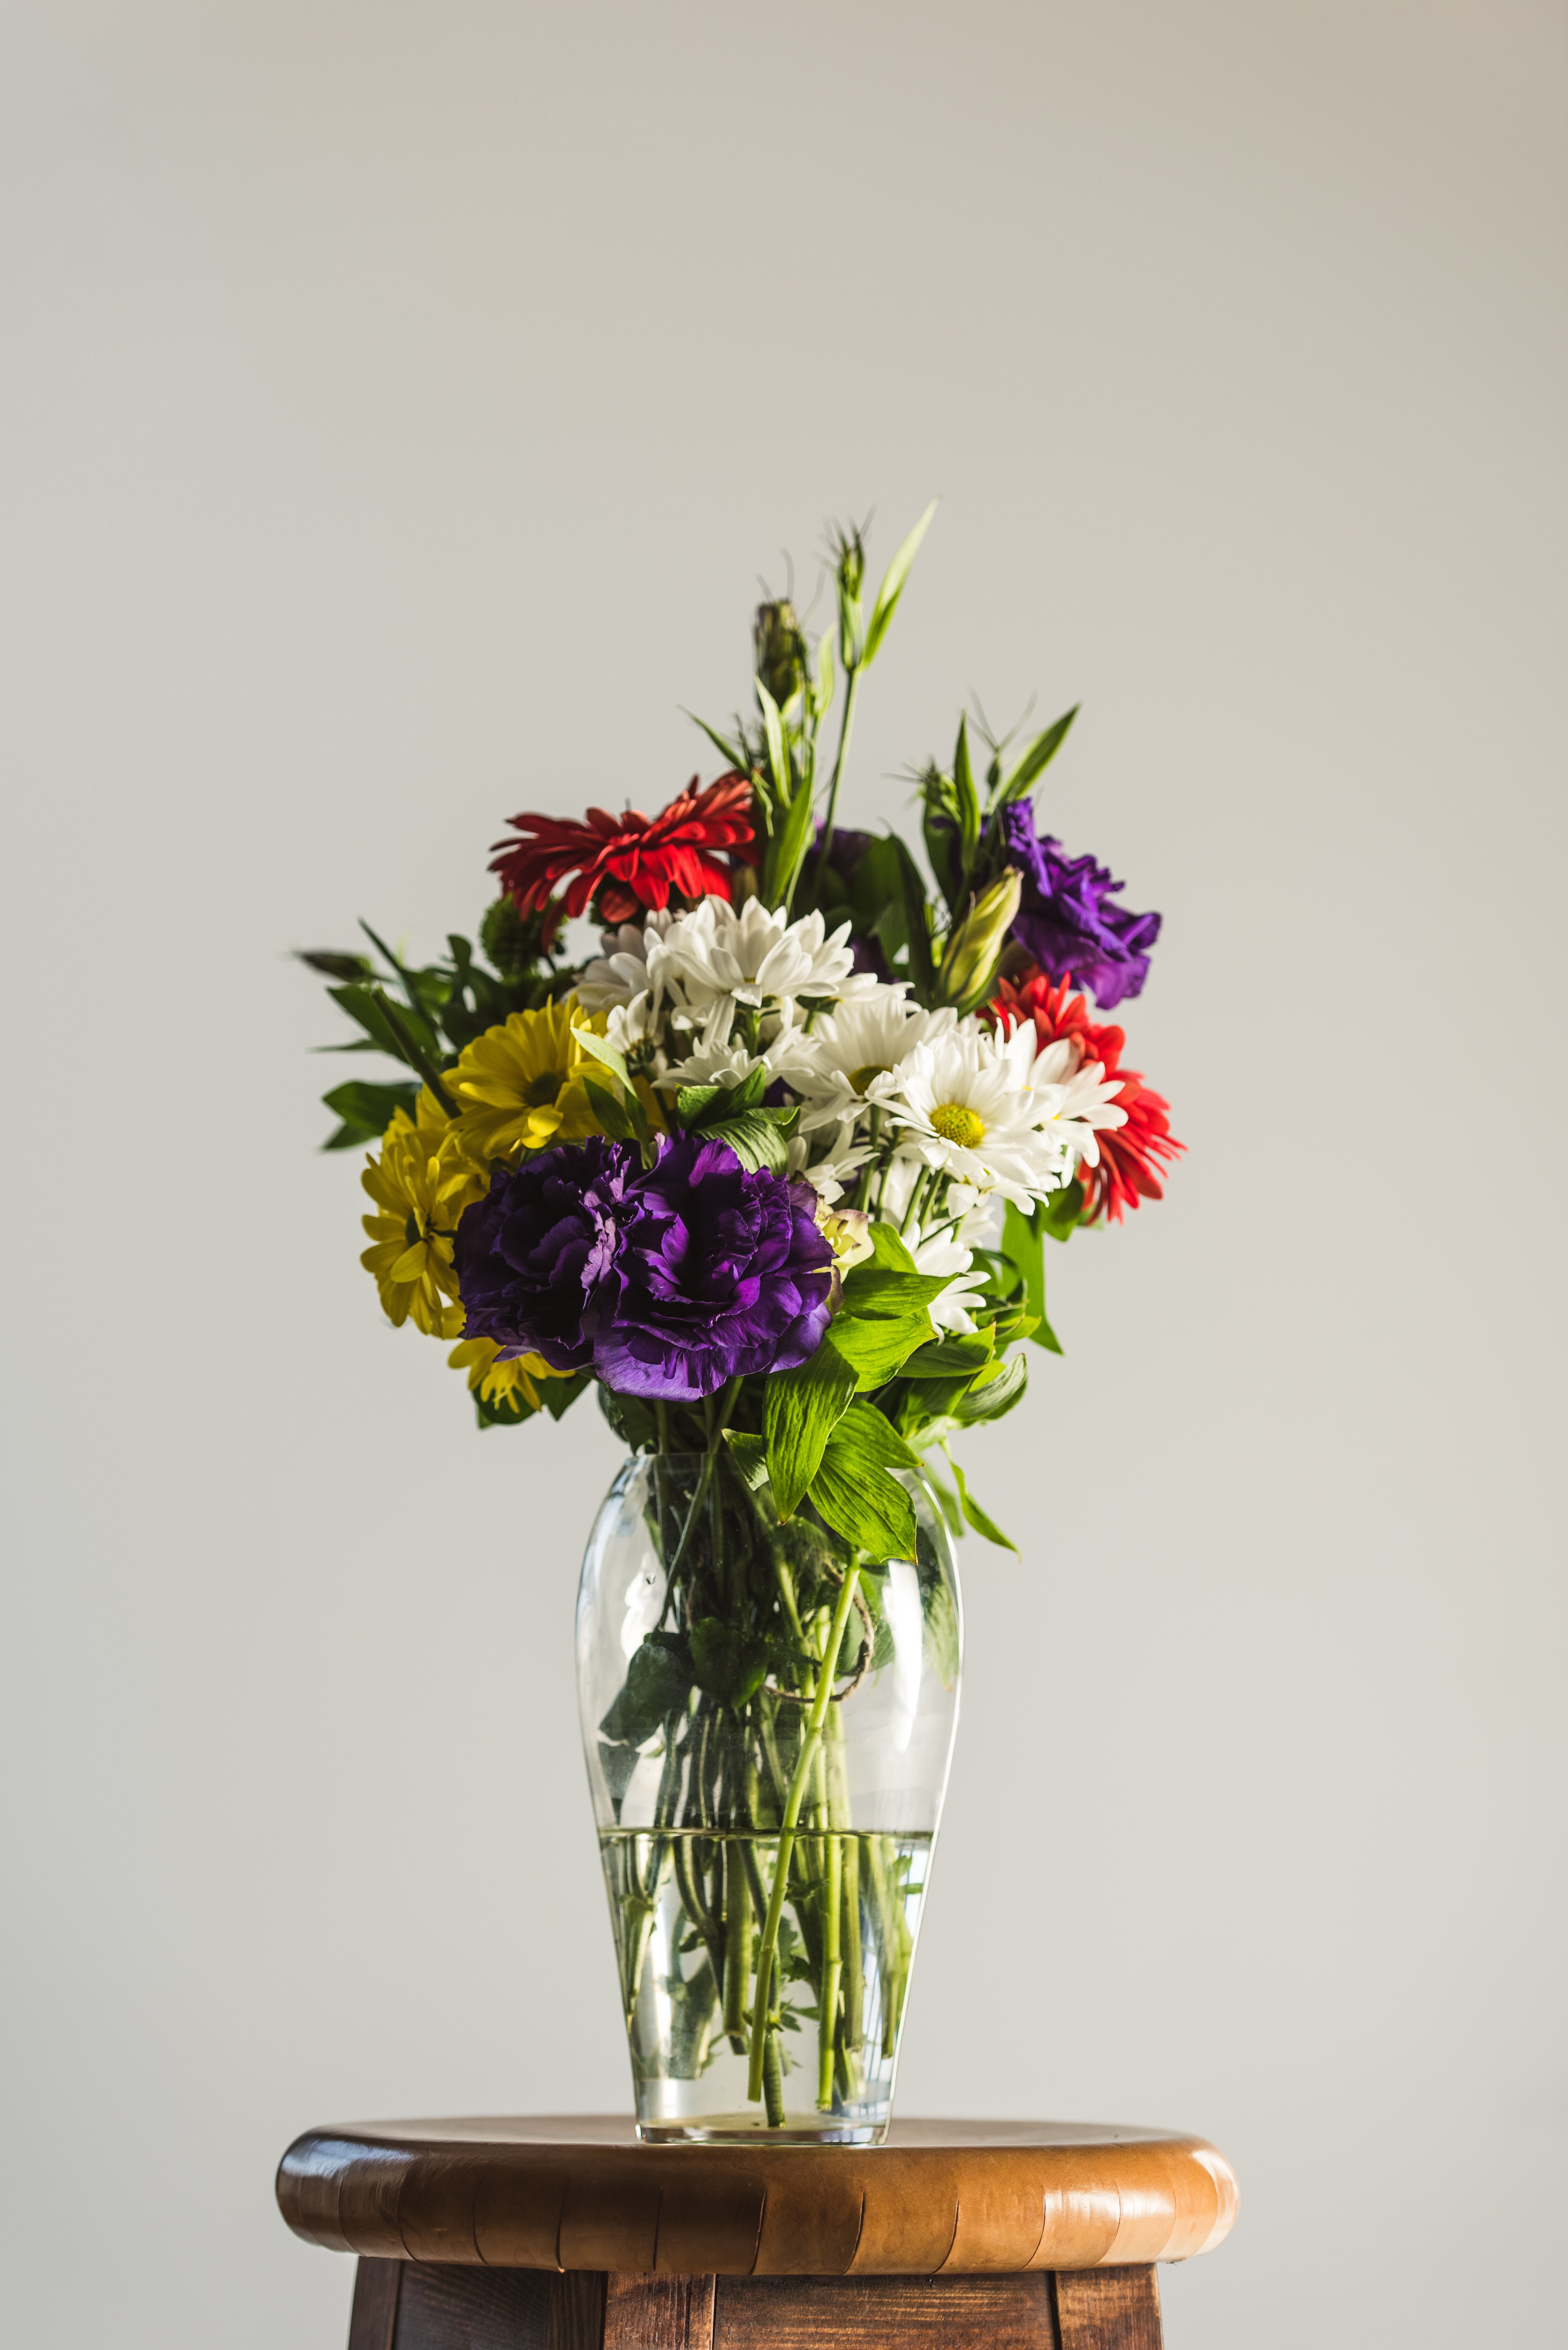 La costumbre de regalar flores como demostración de amor se remonta a las bodas de la Edad Media.